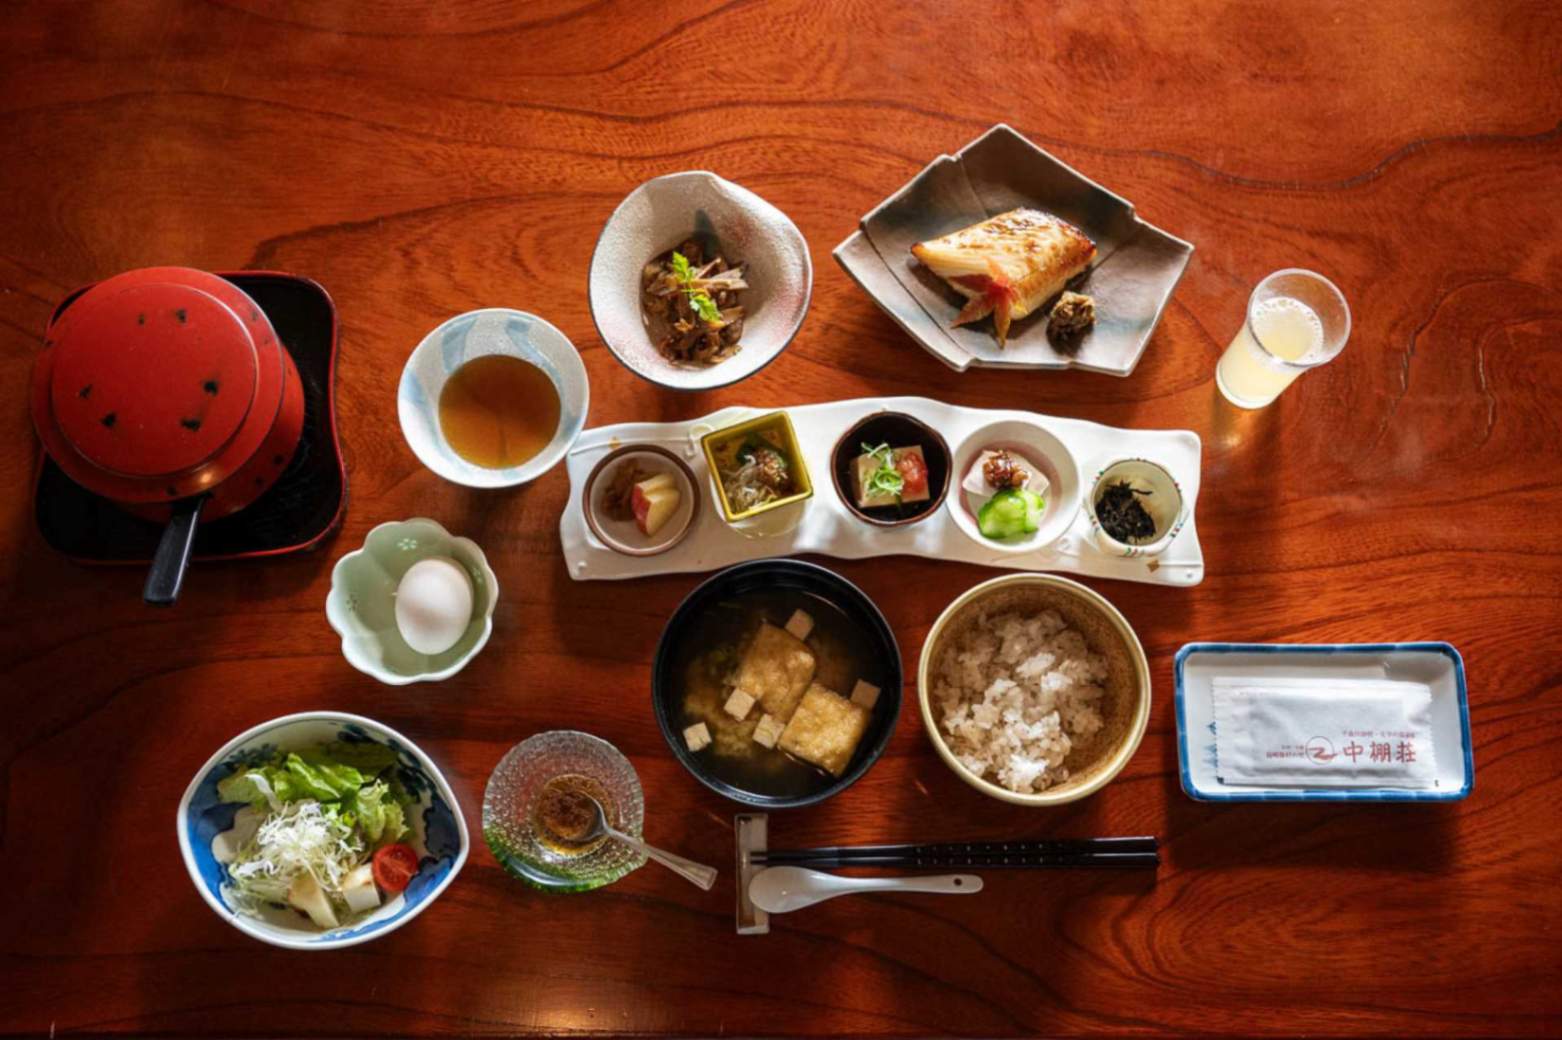 Le petit-déjeuner japonais traditionnel : du riz, de la soupe et trois accompagnements